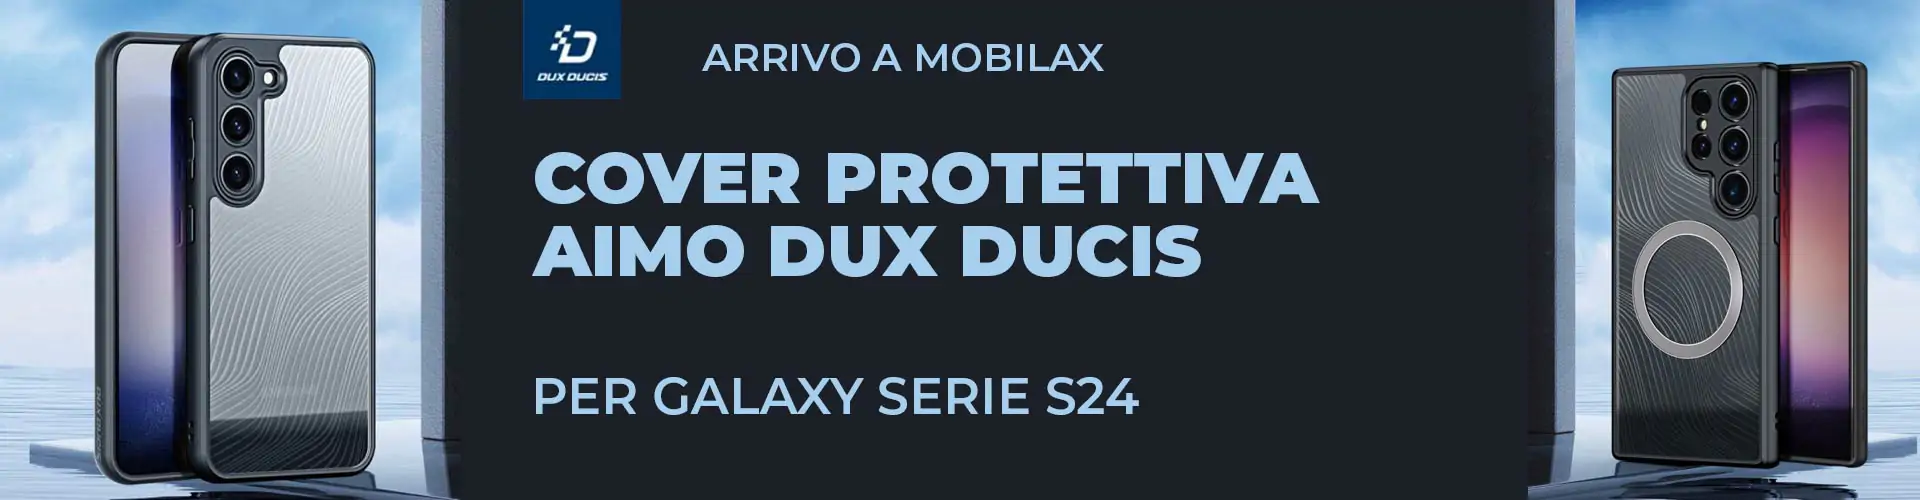 Cover protettiva Aimo Dux Ducis